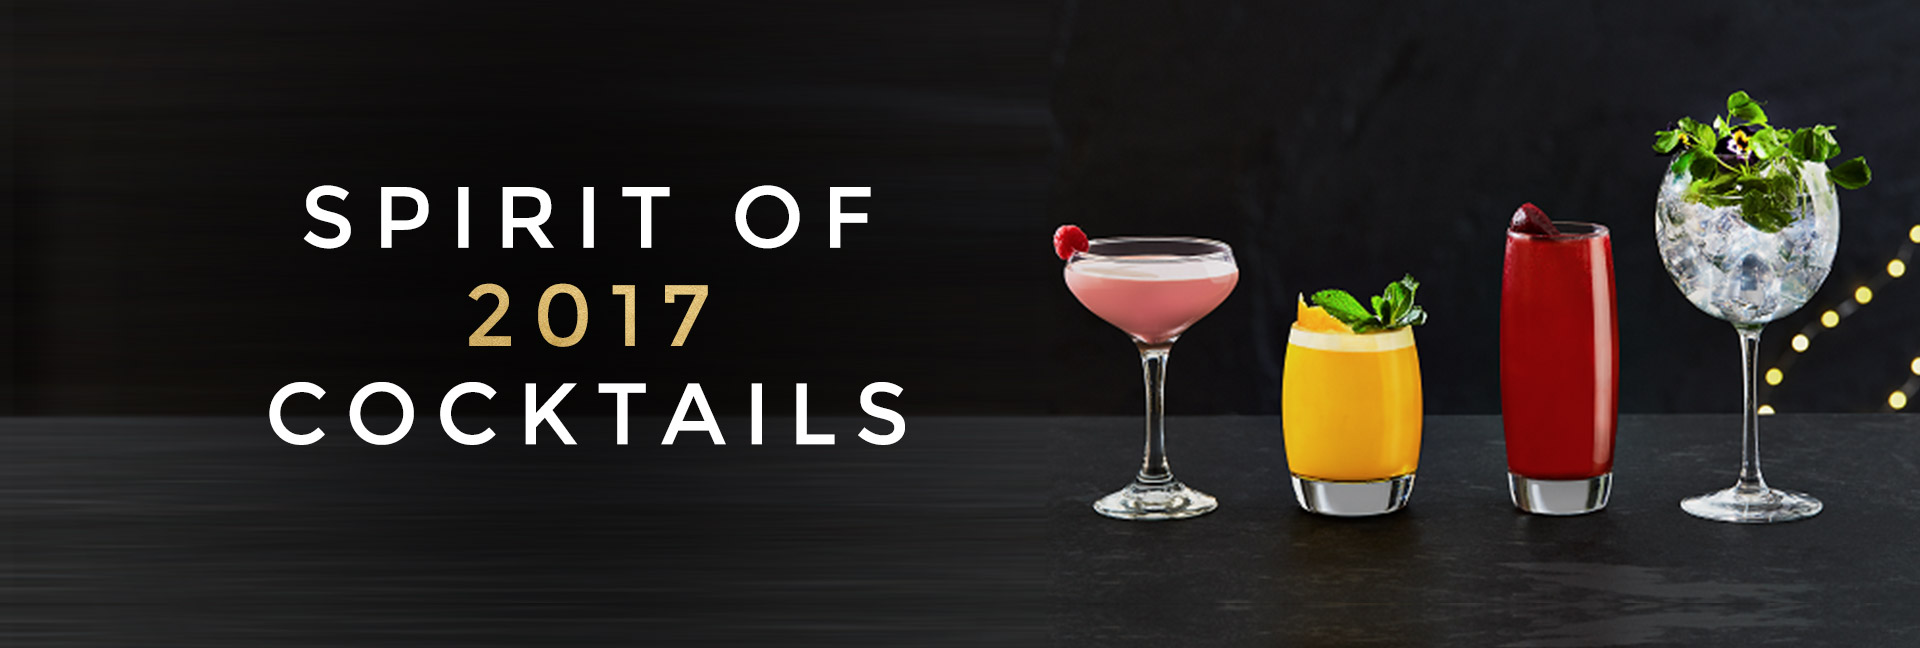 Spirit of 2017 cocktails at [outlet]